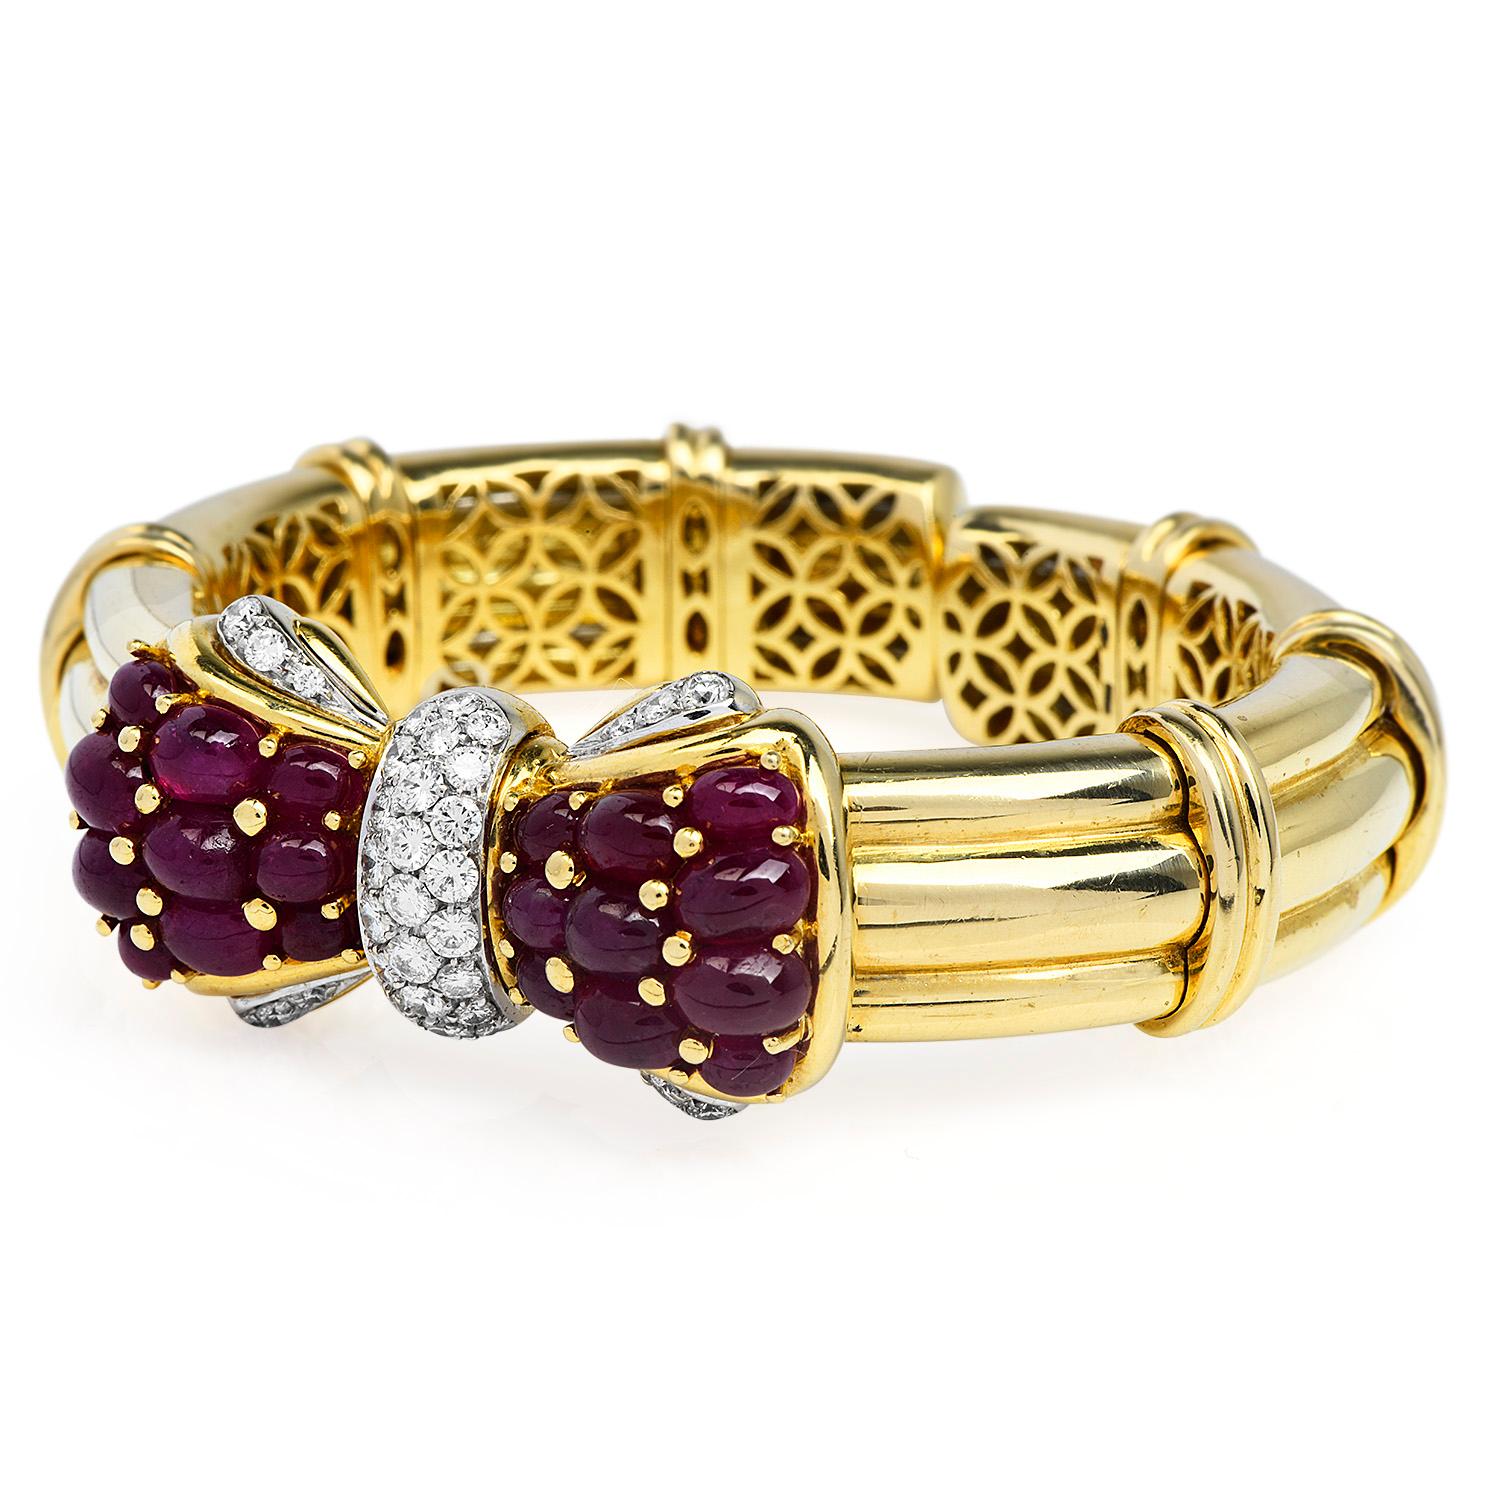 Cet exquis bracelet en diamants et rubis, datant des années 1980, est le parfait équilibre entre romantisme, plaisir et élégance, 

 
Avec un motif en forme de nœud supérieur, composé d'une grappe de diamants et de rubis, avec une finition hautement